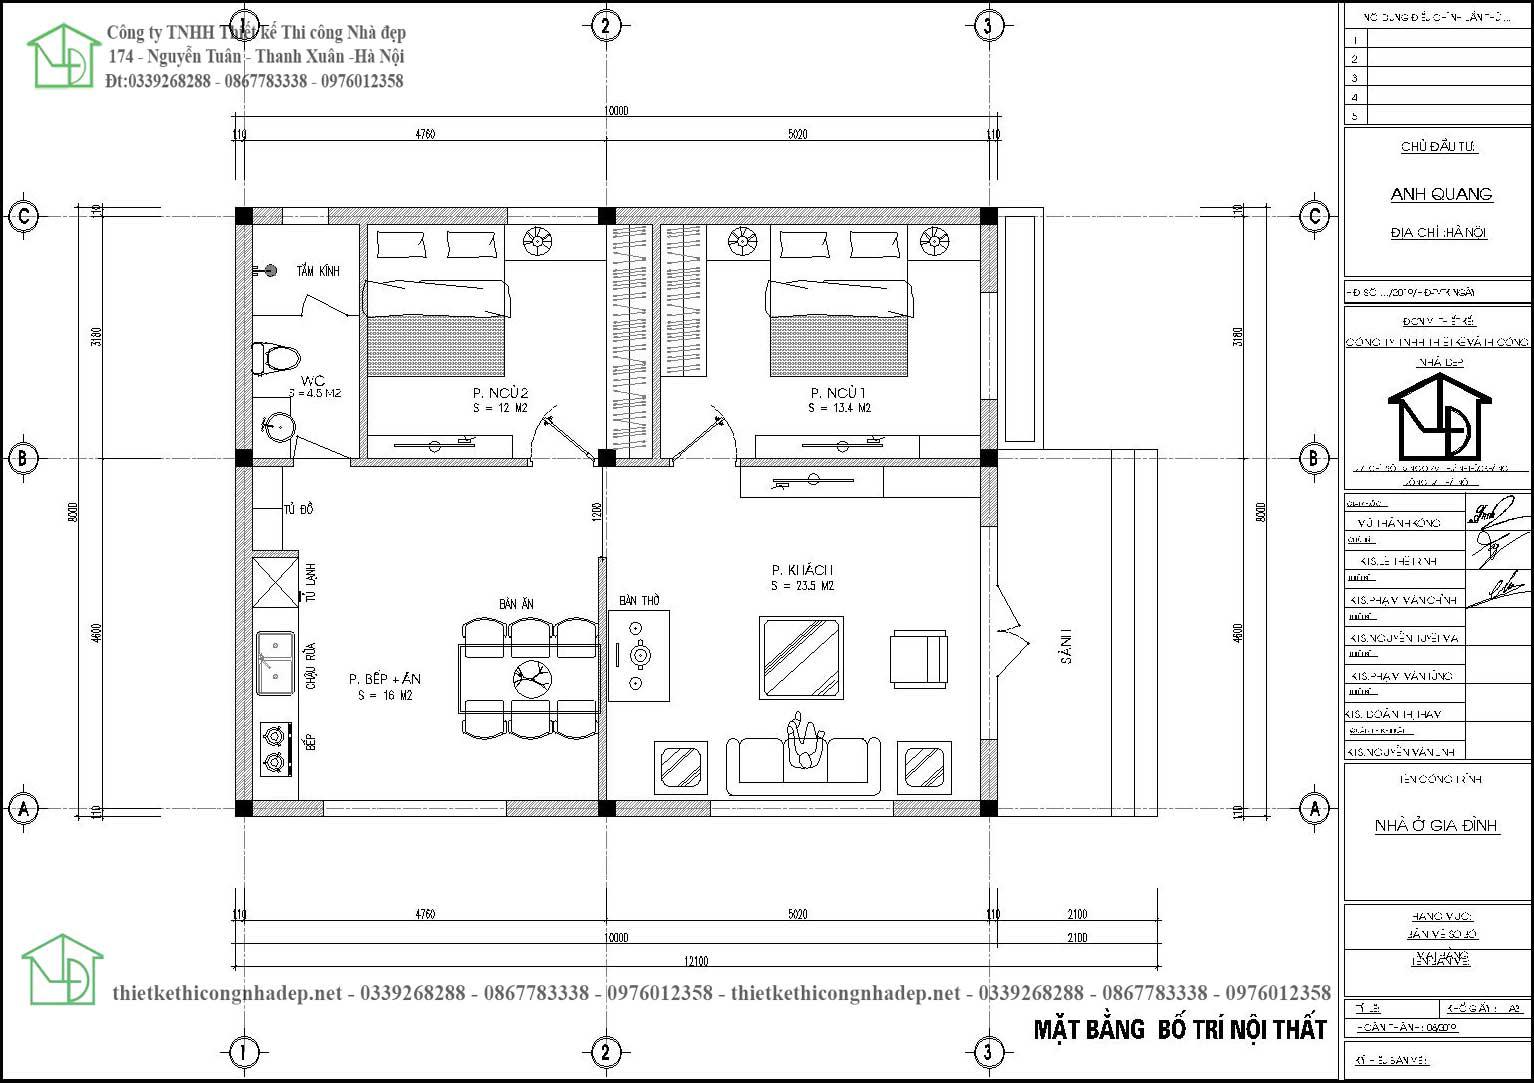 Mẫu thiết kế nhà cấp 4 8x10m 2 phòng ngủ NDNC4157